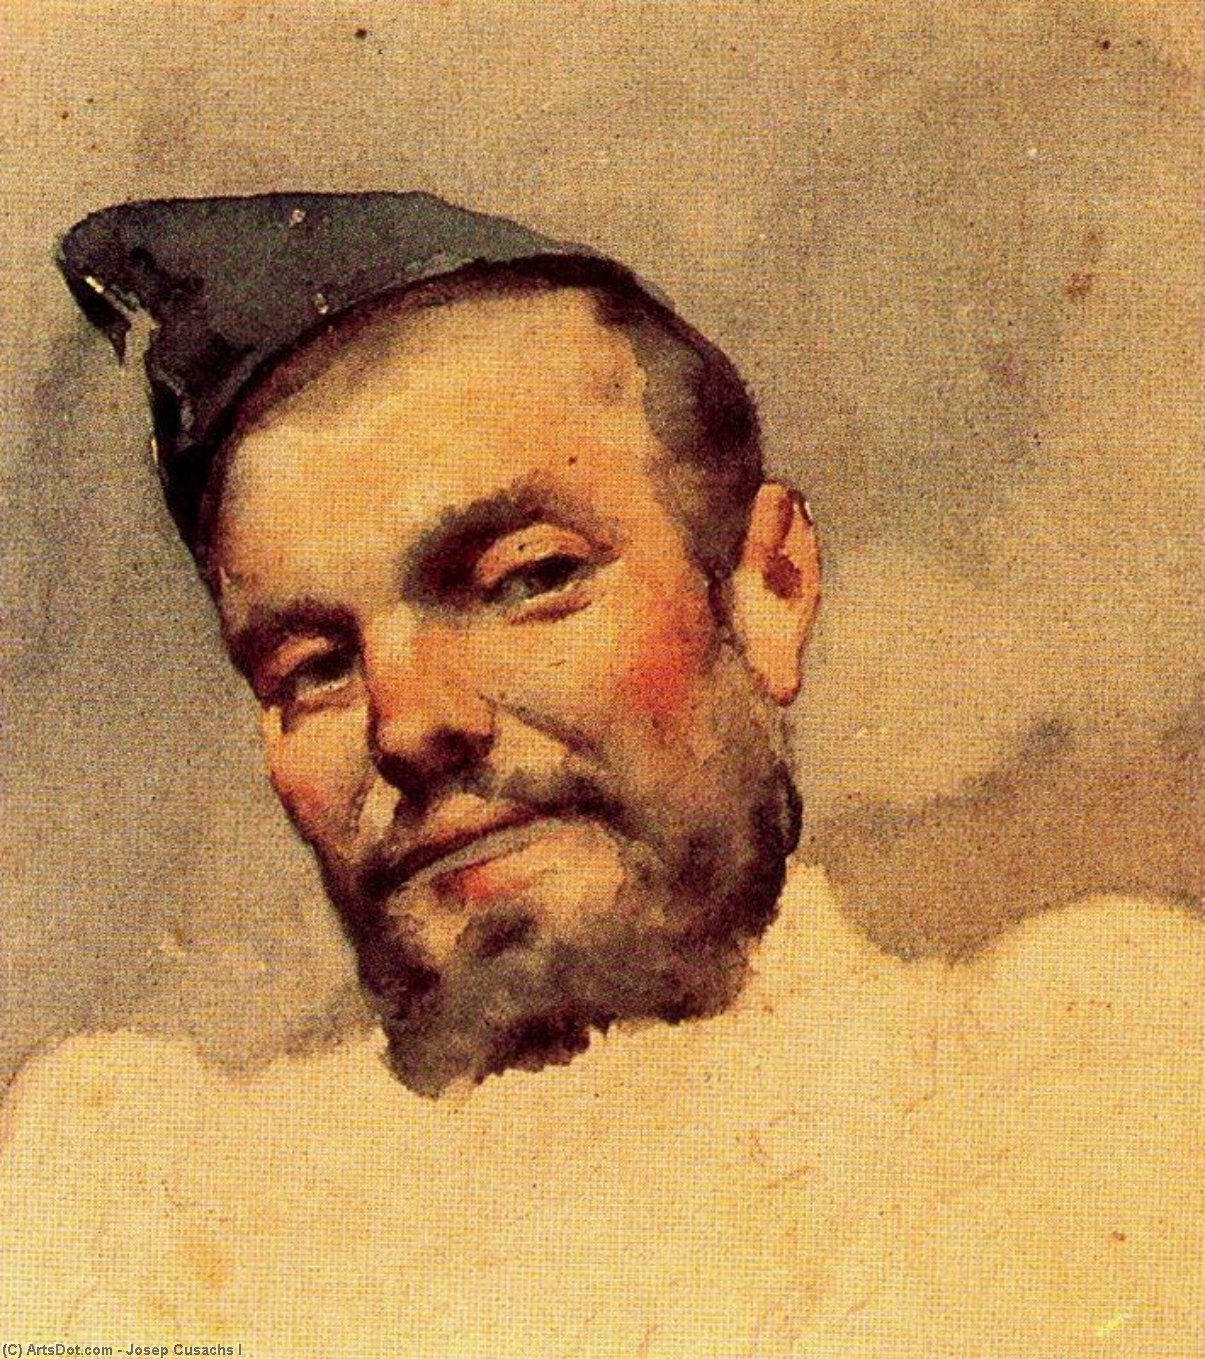 WikiOO.org - Εγκυκλοπαίδεια Καλών Τεχνών - Ζωγραφική, έργα τέχνης Josep Cusachs I - Bearded soldier